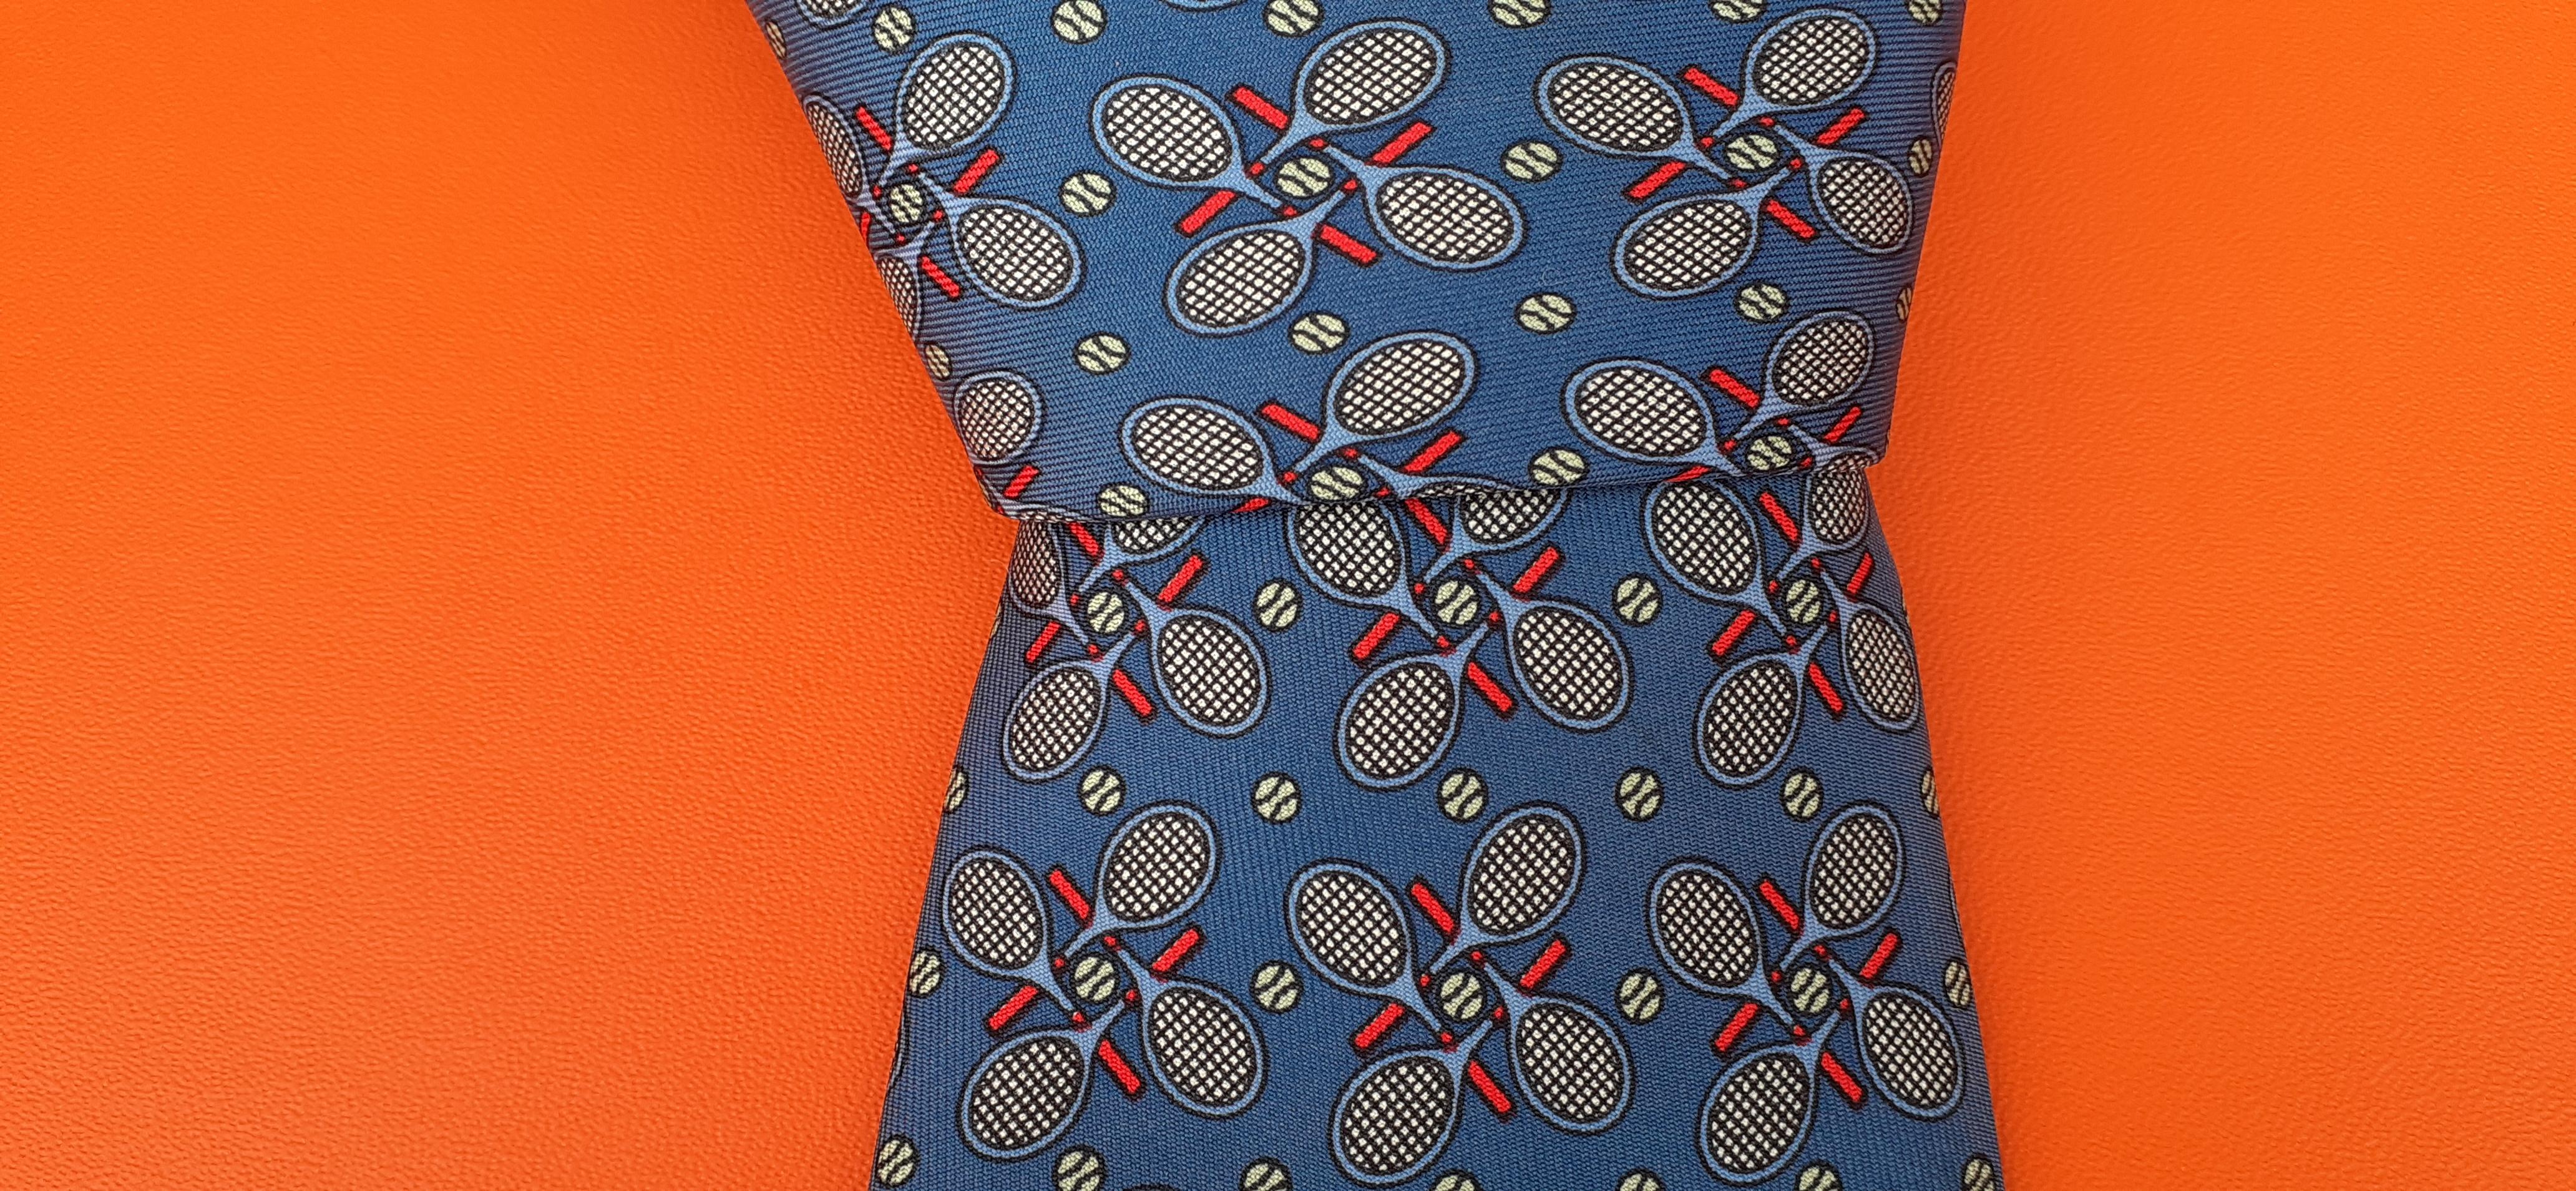 Hermès Silk Tie Tennis Pattern Mint Condition 2